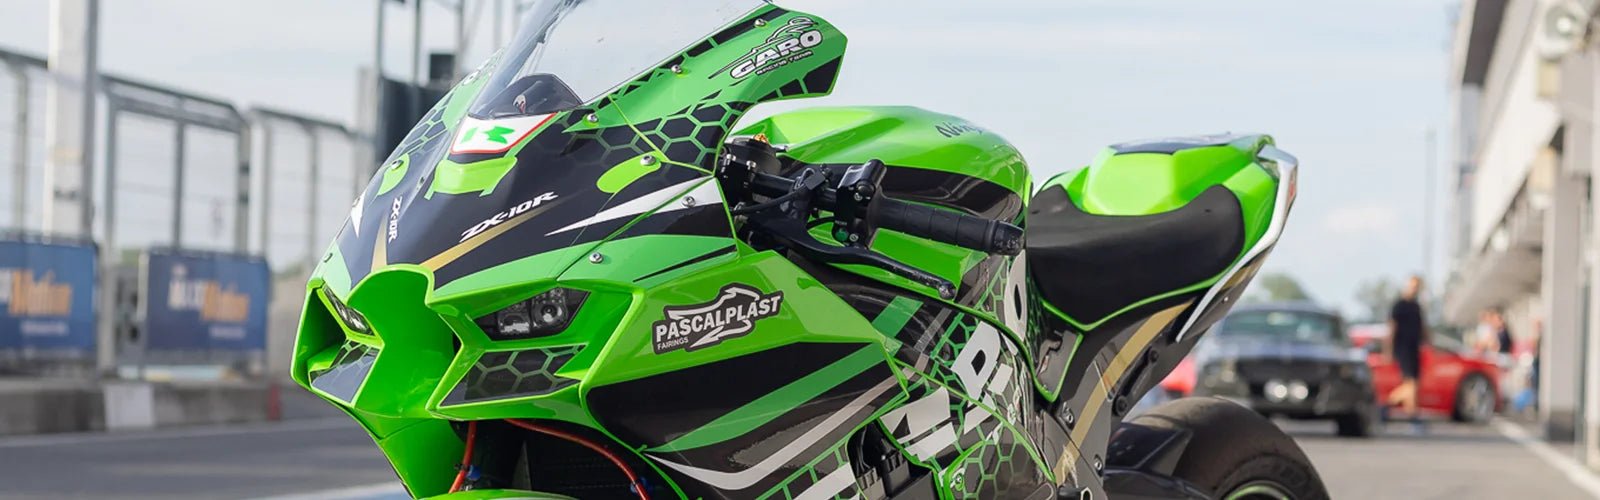 Full set Kawasaki zx10r 2021